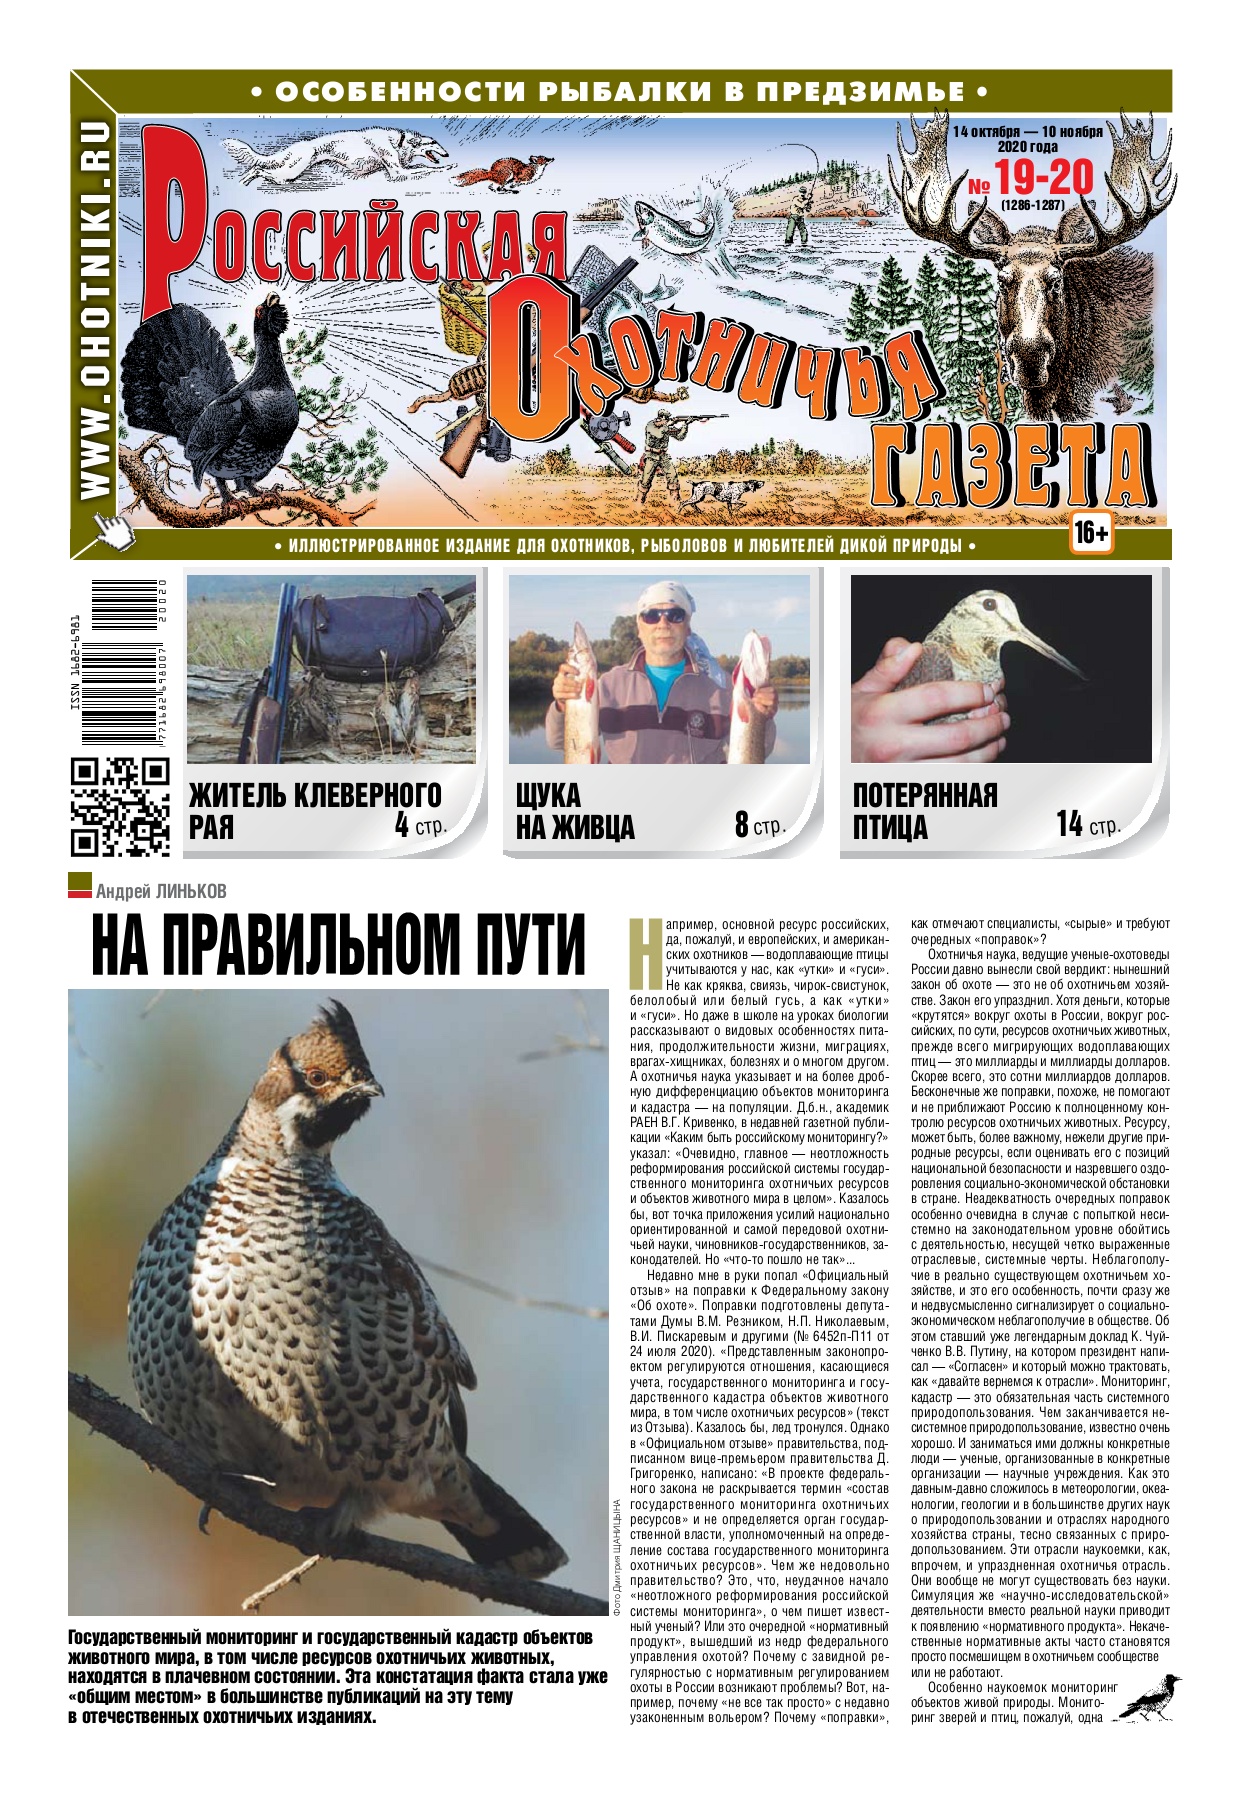 Российская Охотничья Газета №19-20, октябрь - ноябрь 2020